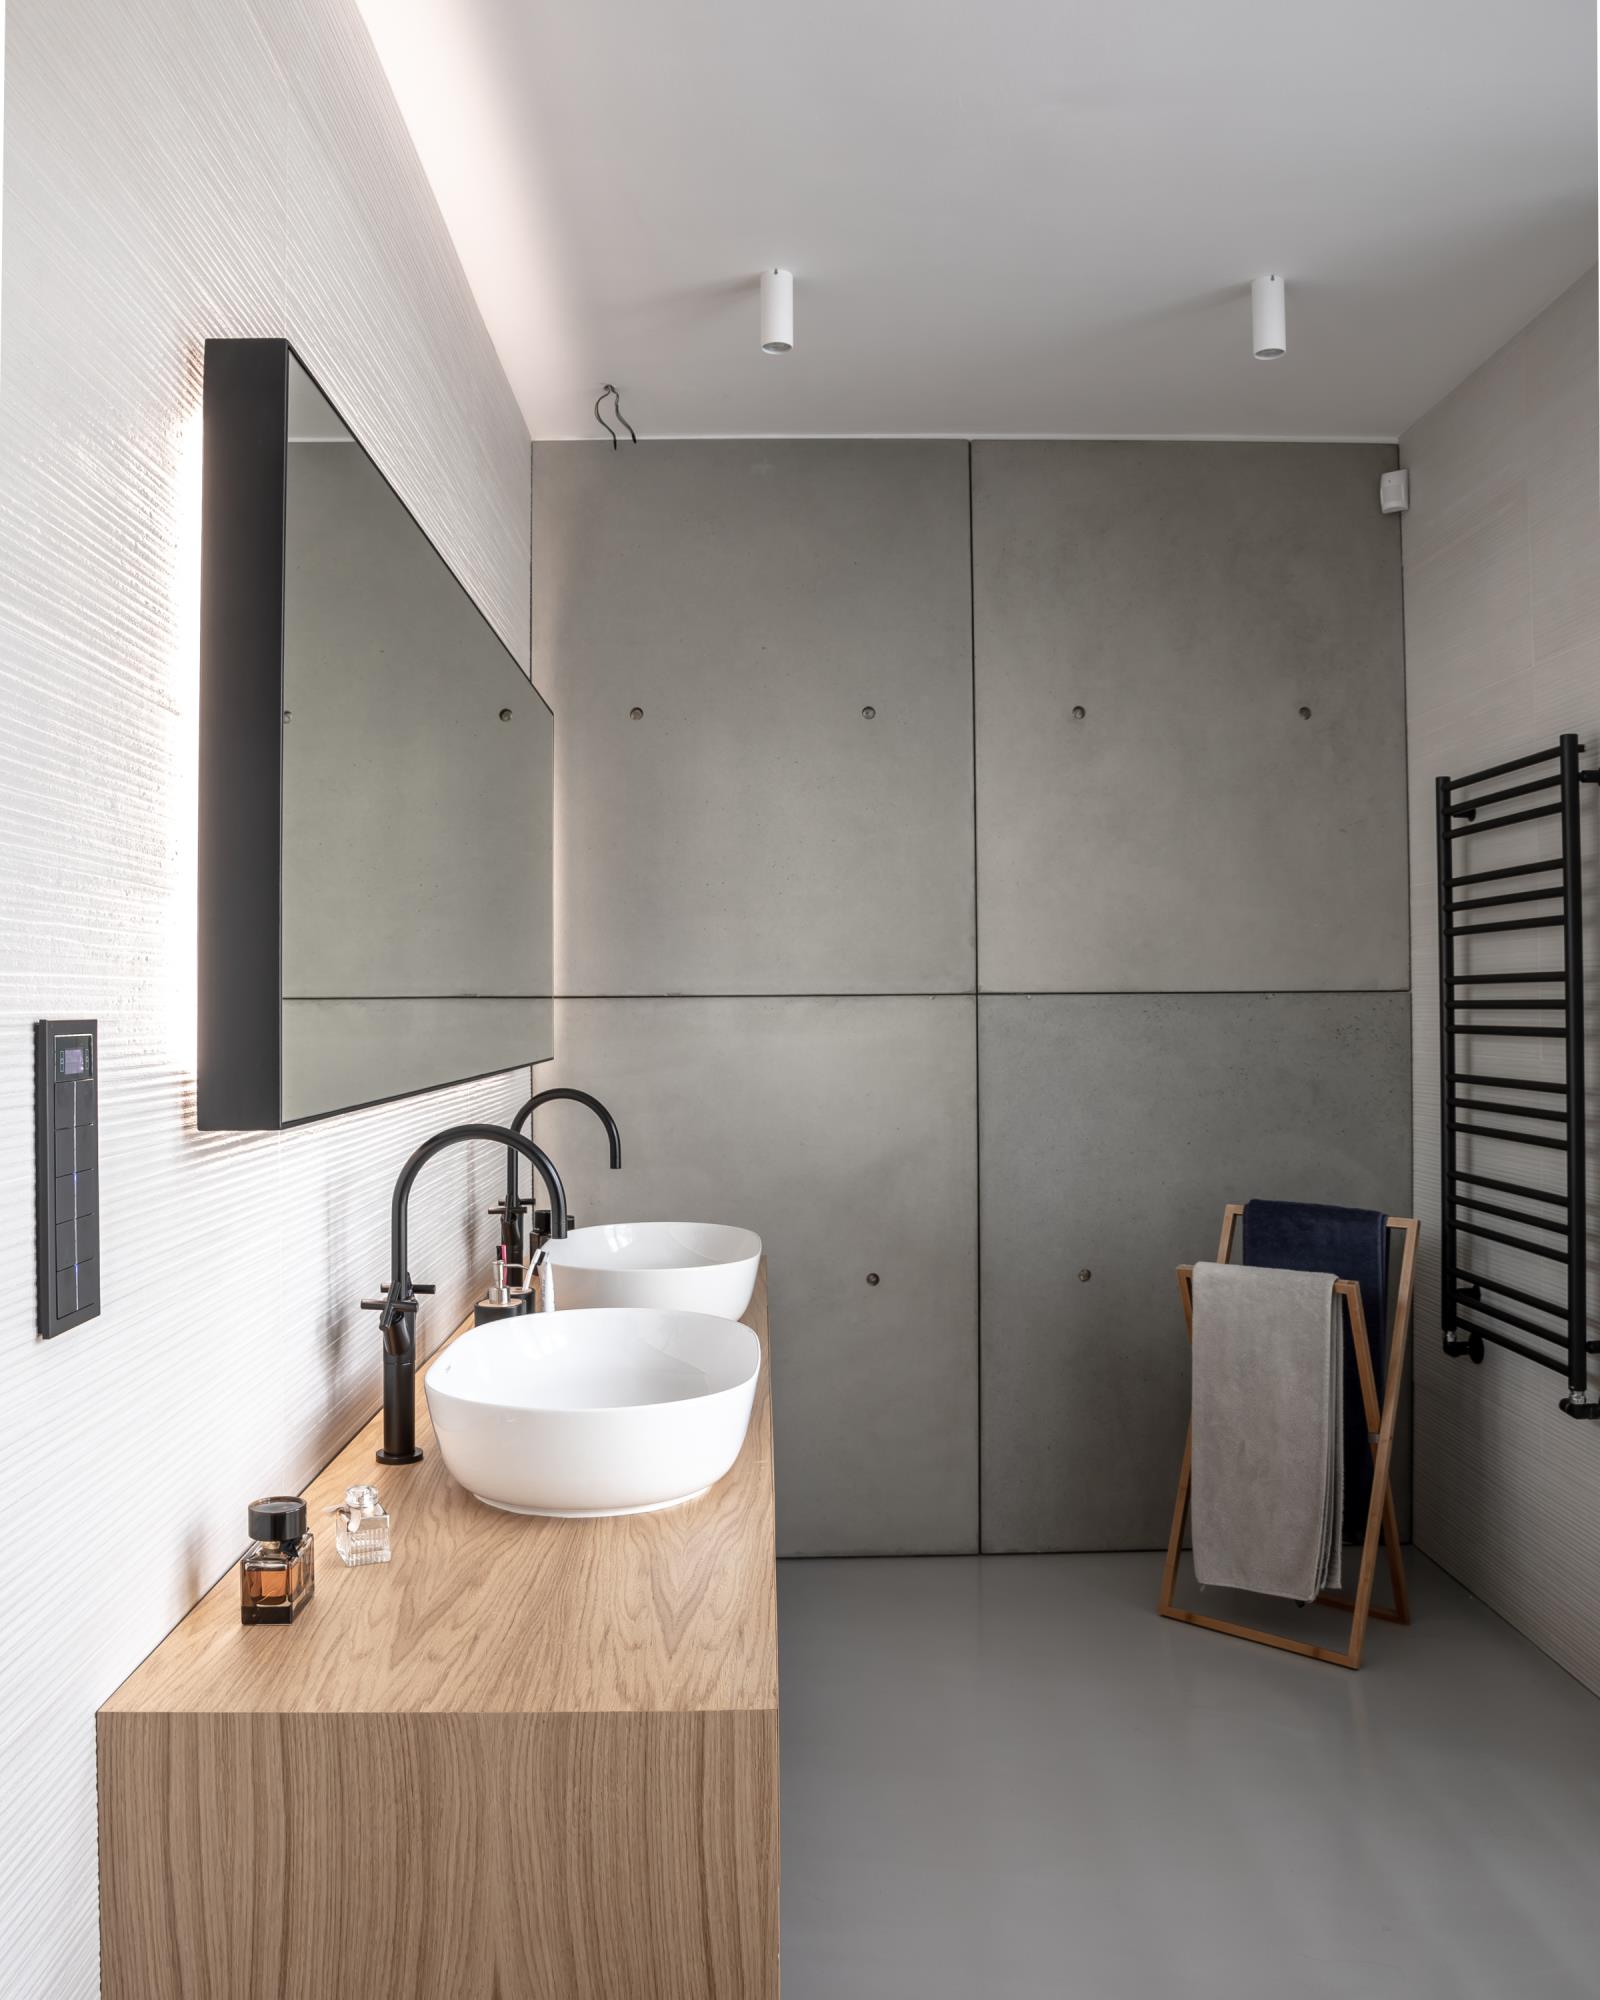 moderná kúpeľňa s výraznými betónovými prvkami a dvoma umývadlami